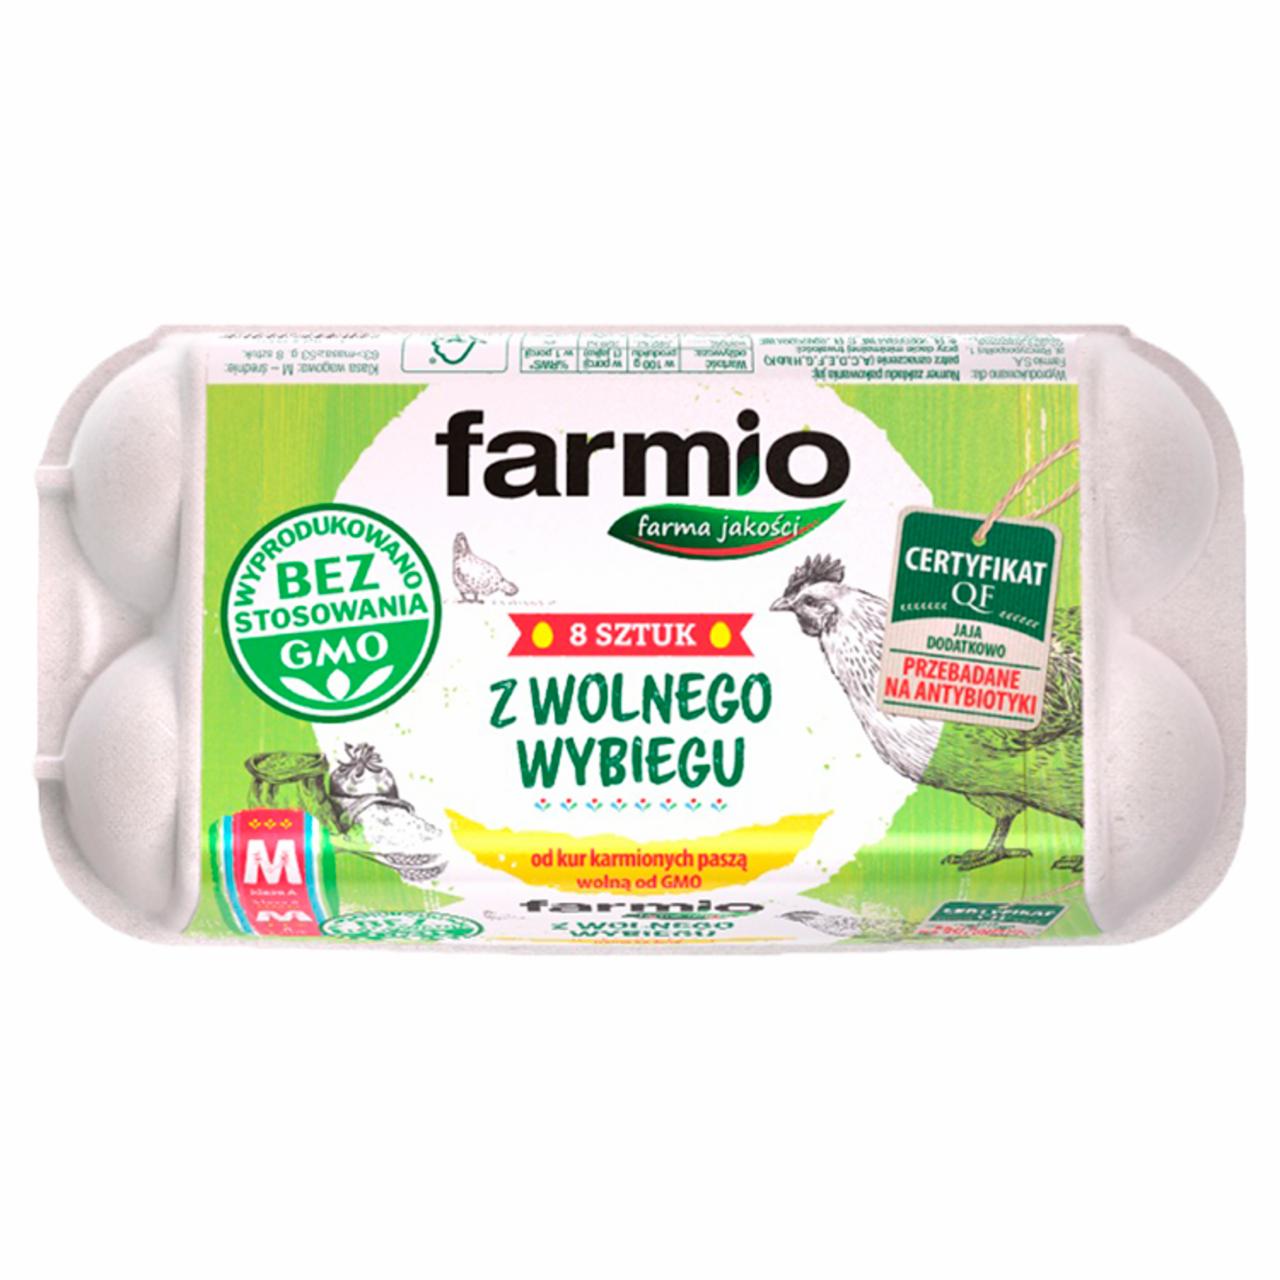 Zdjęcia - Farmio Jaja z wolnego wybiegu od kur karmionych paszą wolną od GMO M 8 sztuk